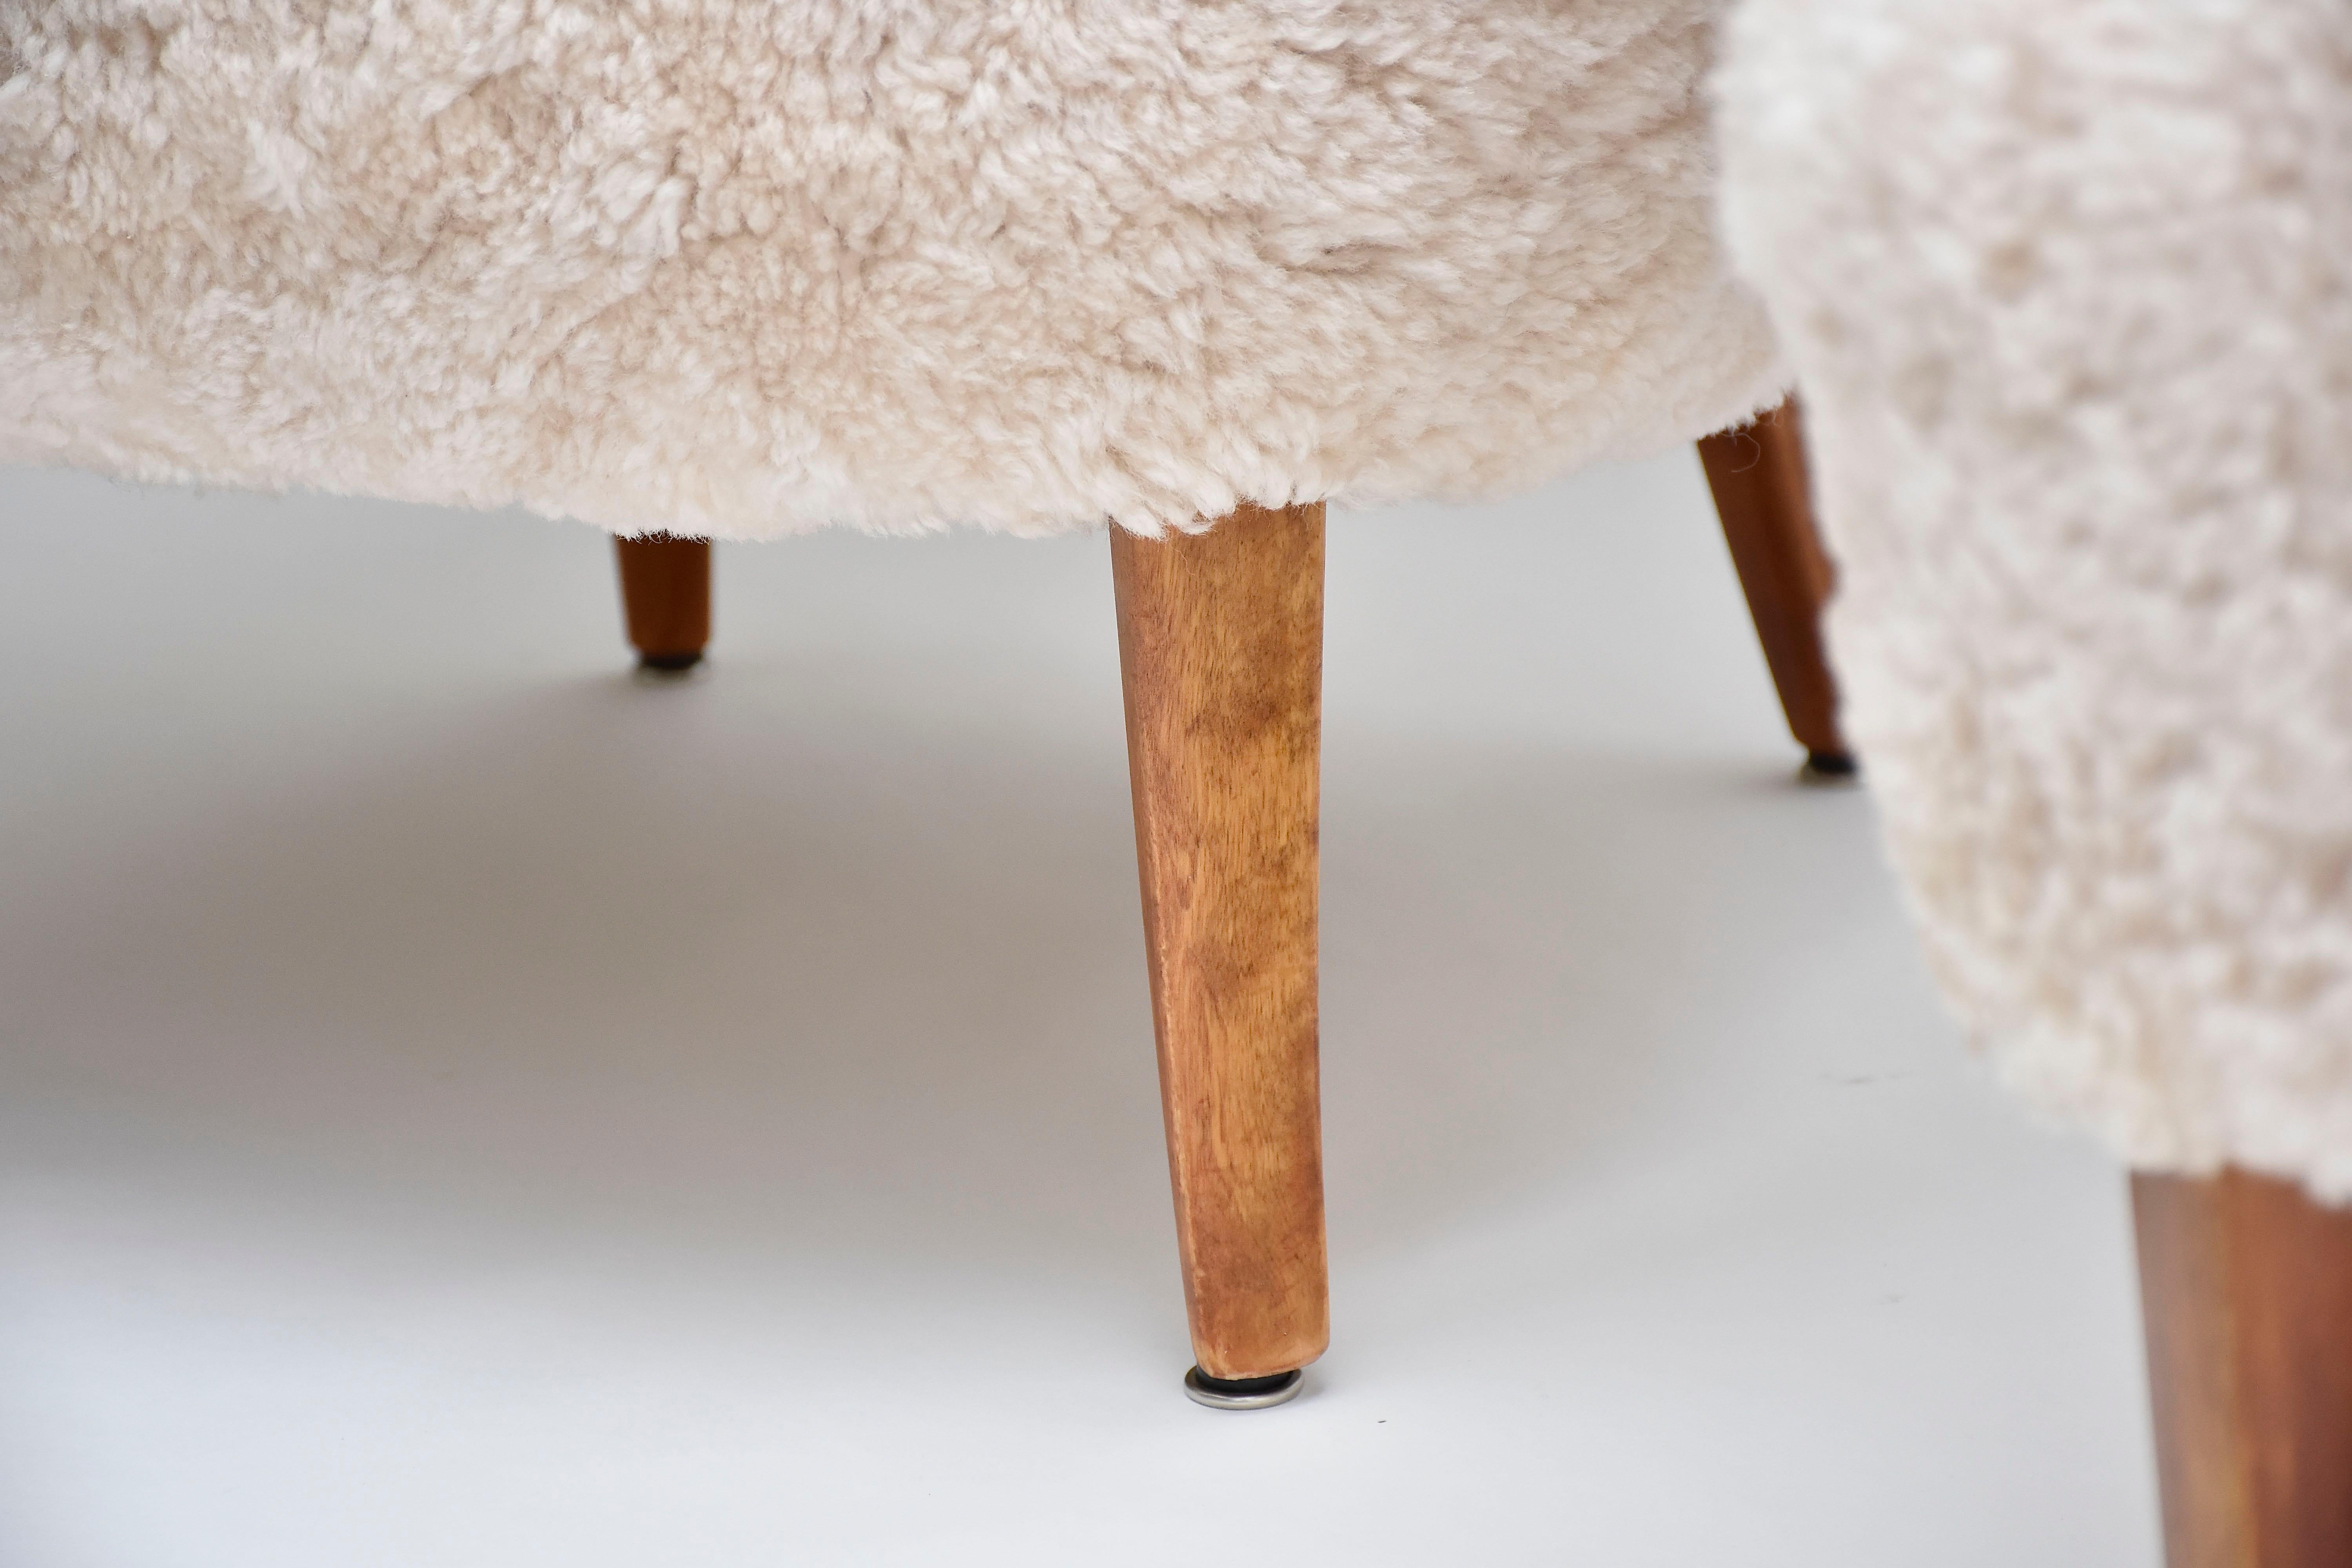 Pair of Scandinavian armchairs 'Stora Furulid' in sheepskin by Carl Malmsten In Good Condition For Sale In SON EN BREUGEL, NL